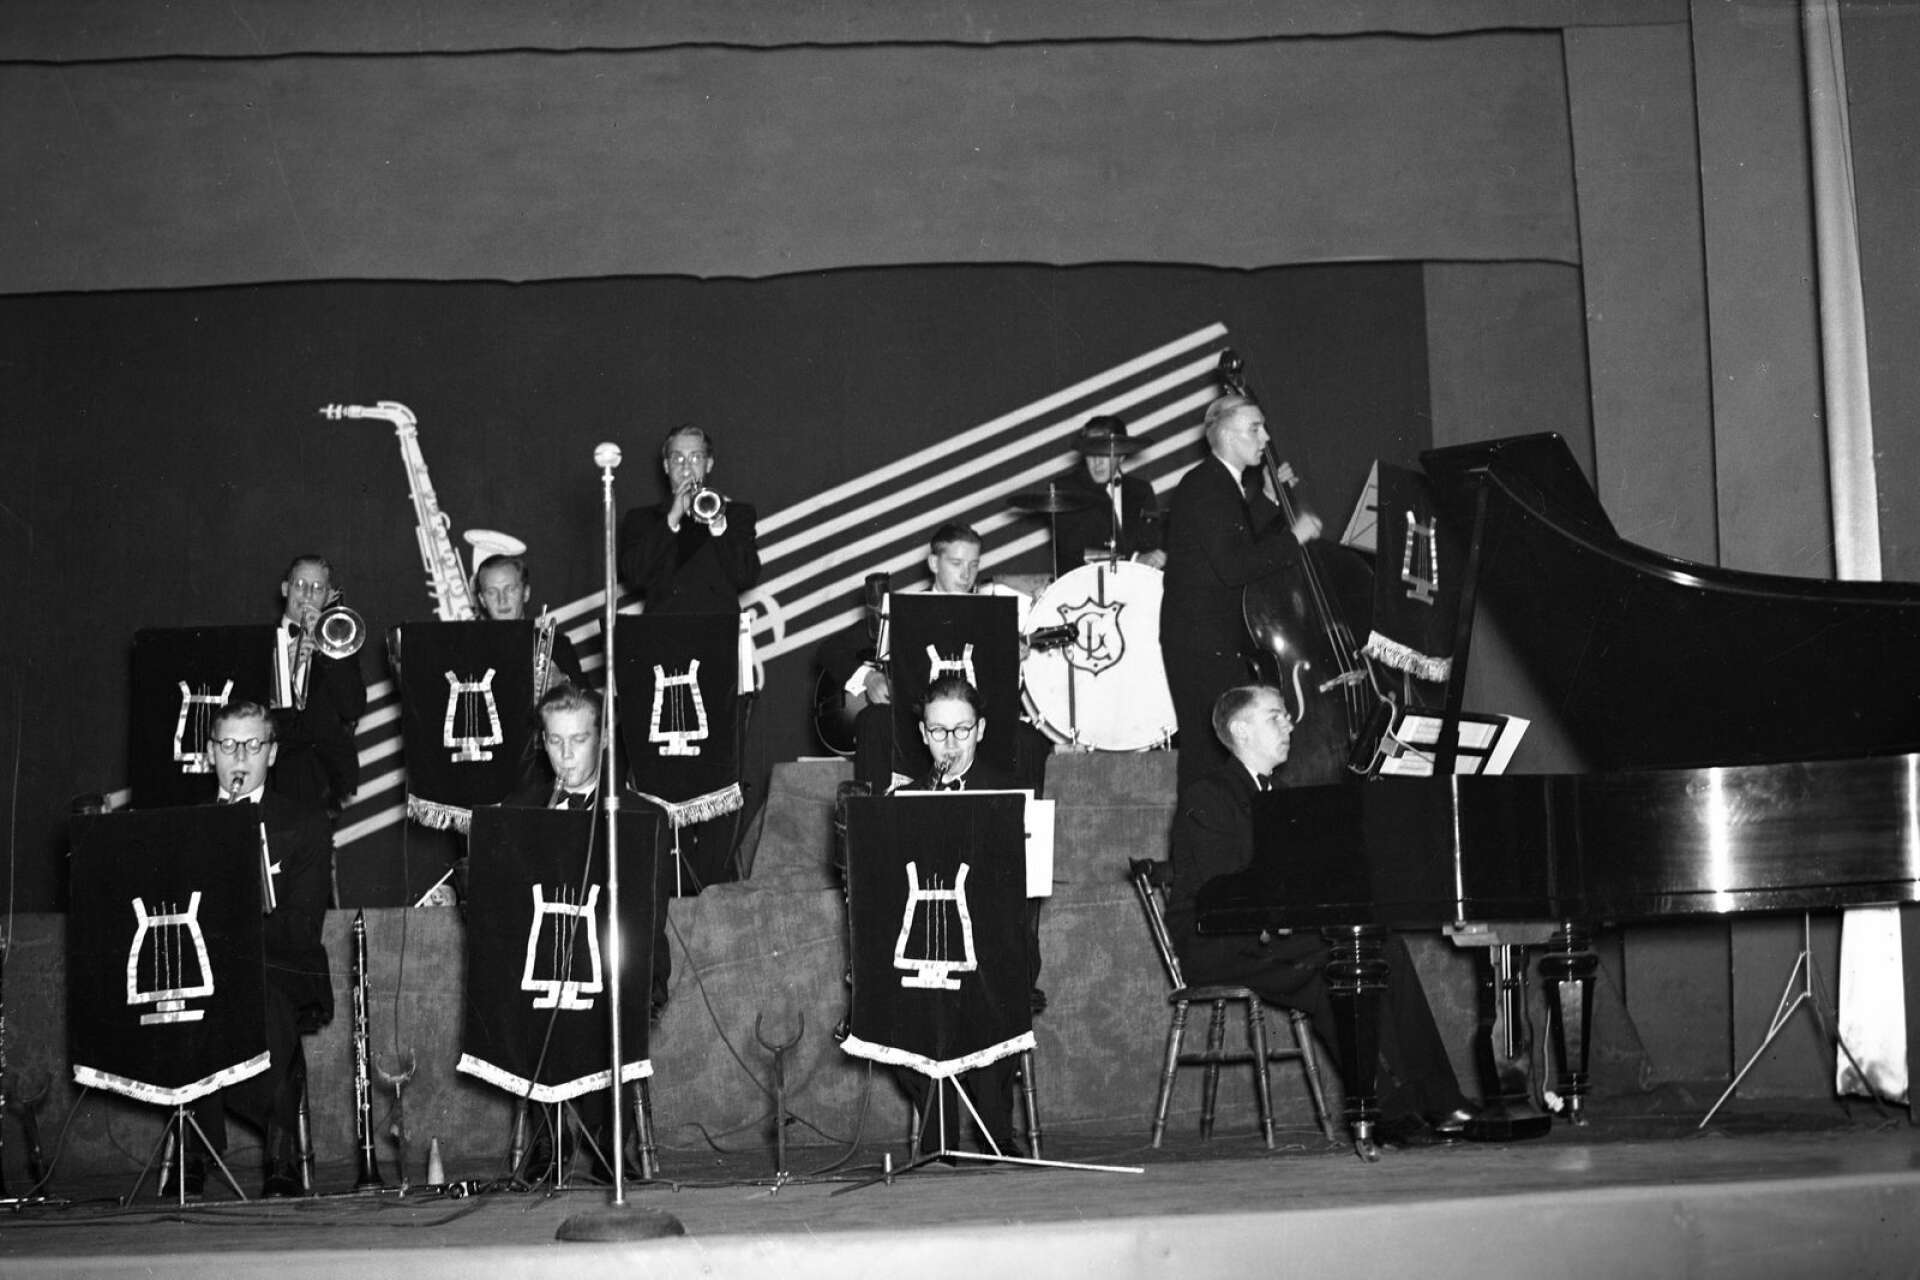 Tiomannabandet Royal orkester år under ett uppträdande 1939 med ett gäng trumpeter, saxofoner, trummor, gitarr, piano och kontrabas.